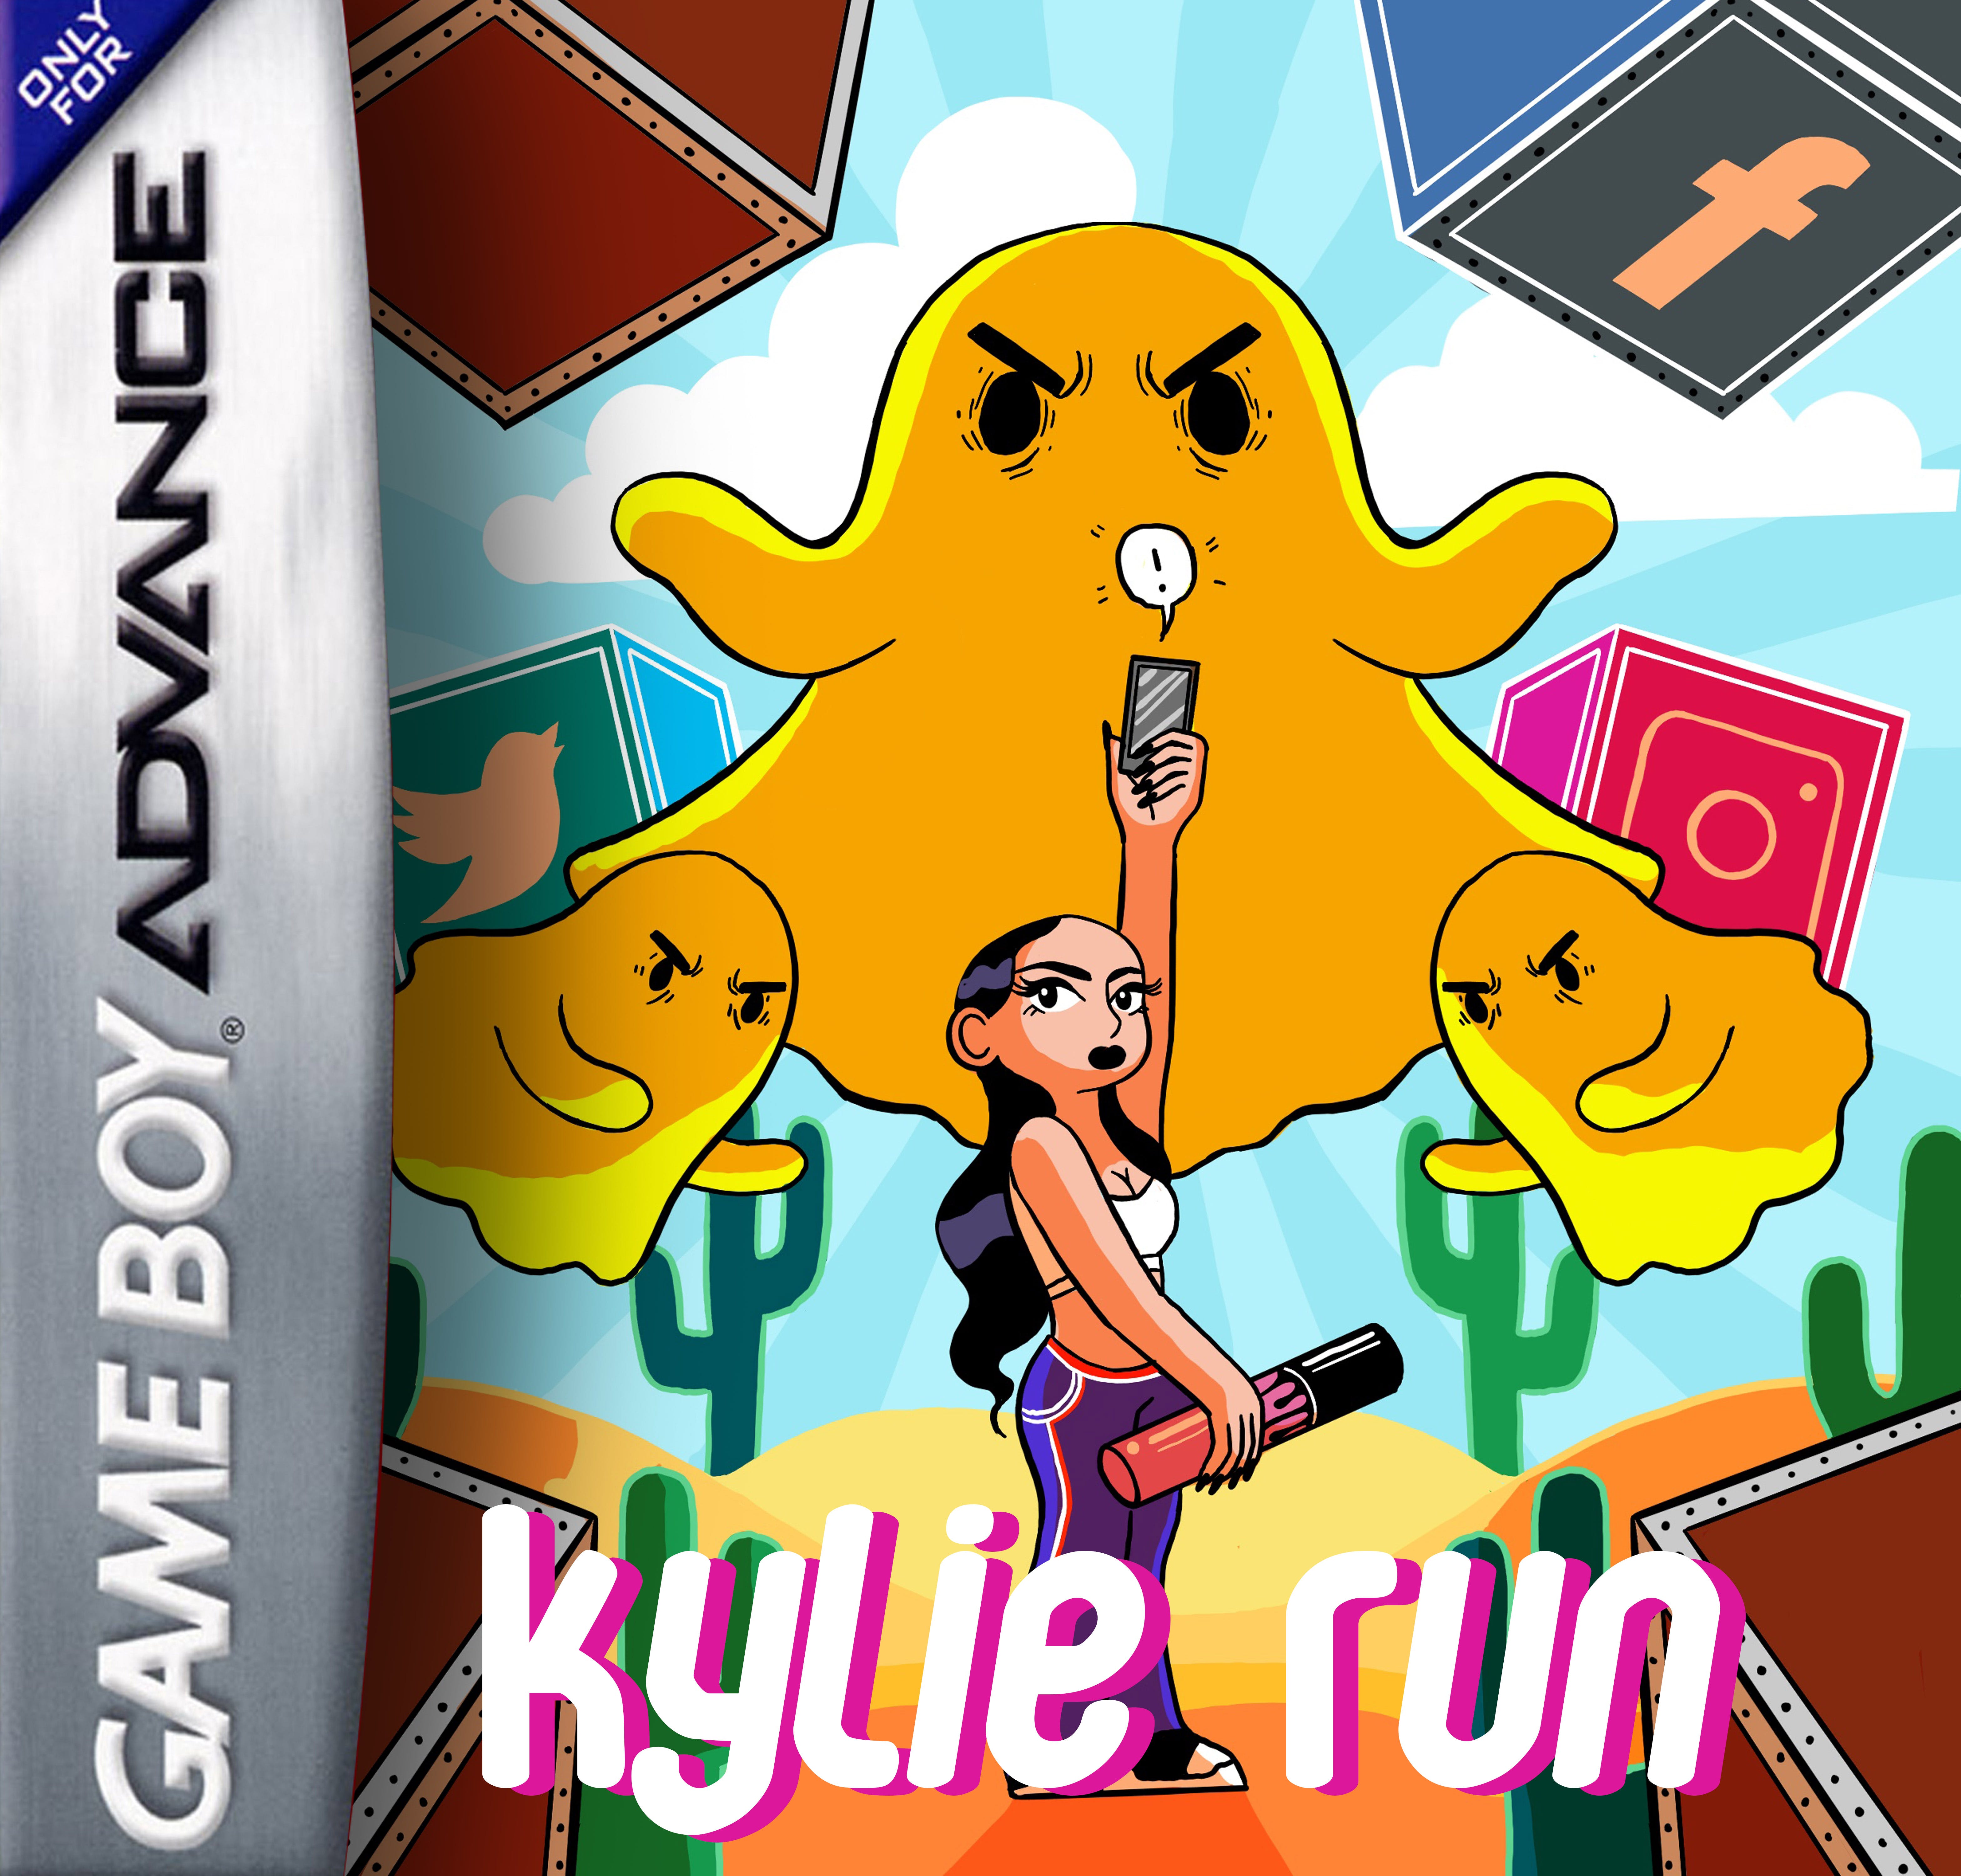 Kylie Run media 2